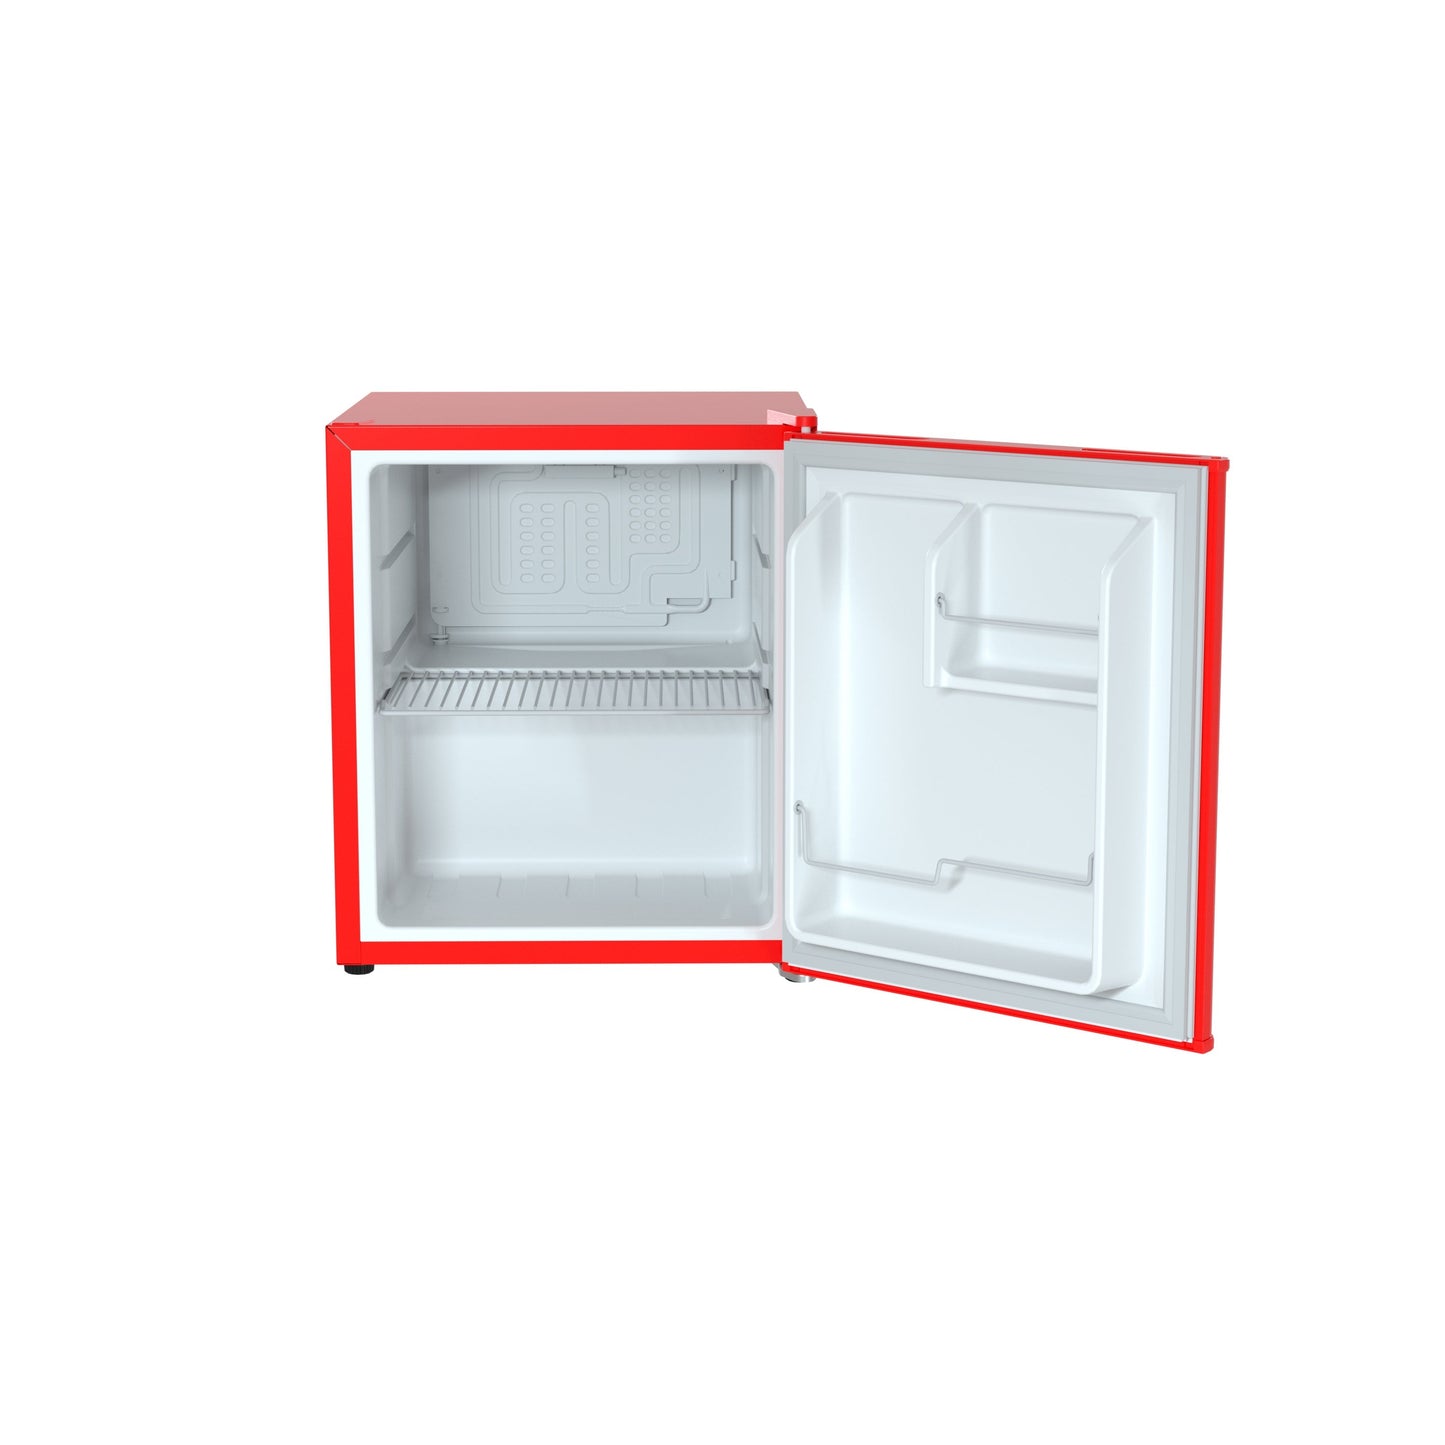 Husky 43L Solid Door 1.5 C.ft. Freestanding Counter-Top Mini Fridge in Red